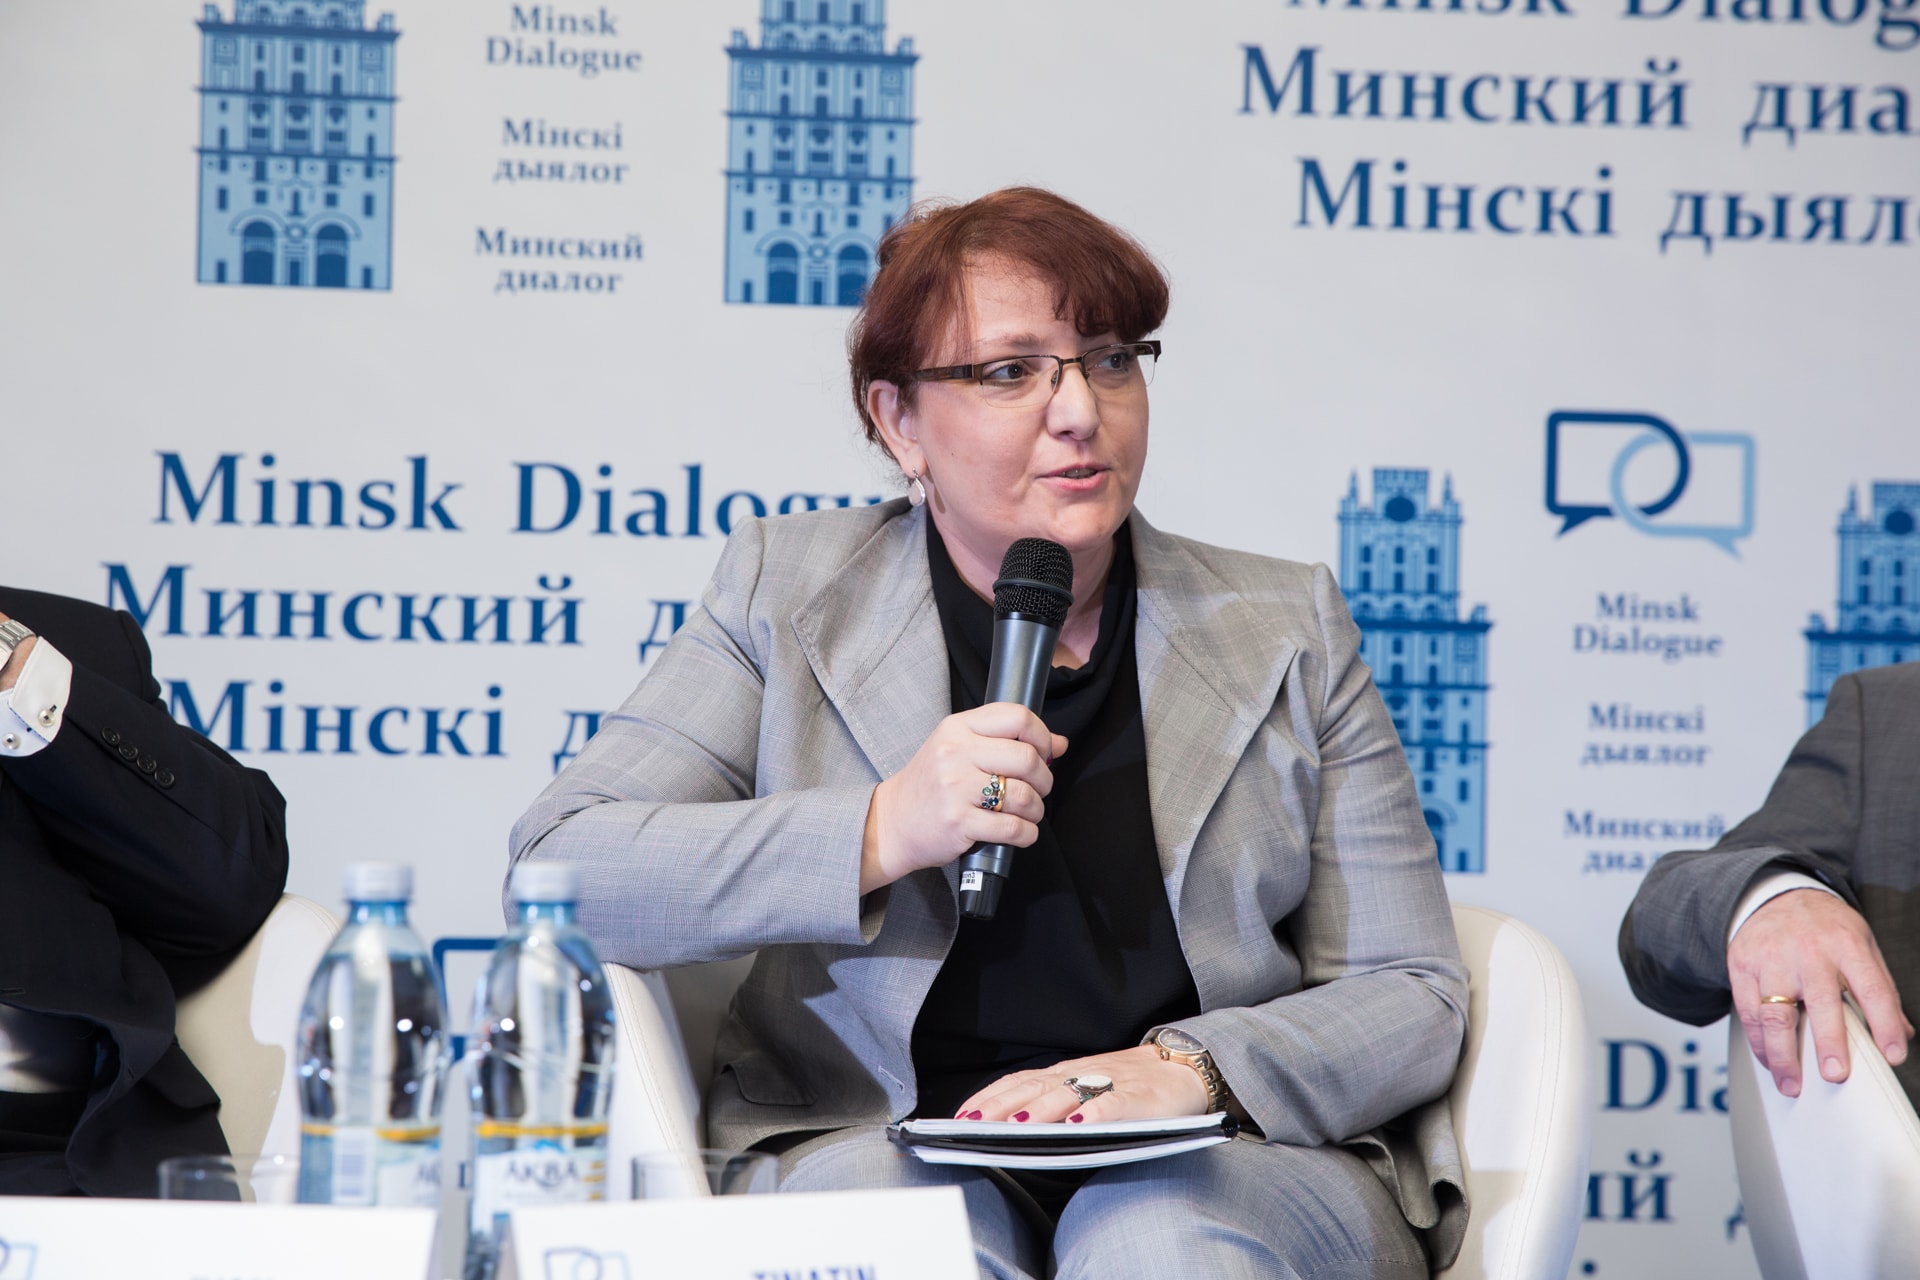 Minsk Dialogue Forum - Day 3 (25.05.2018) 